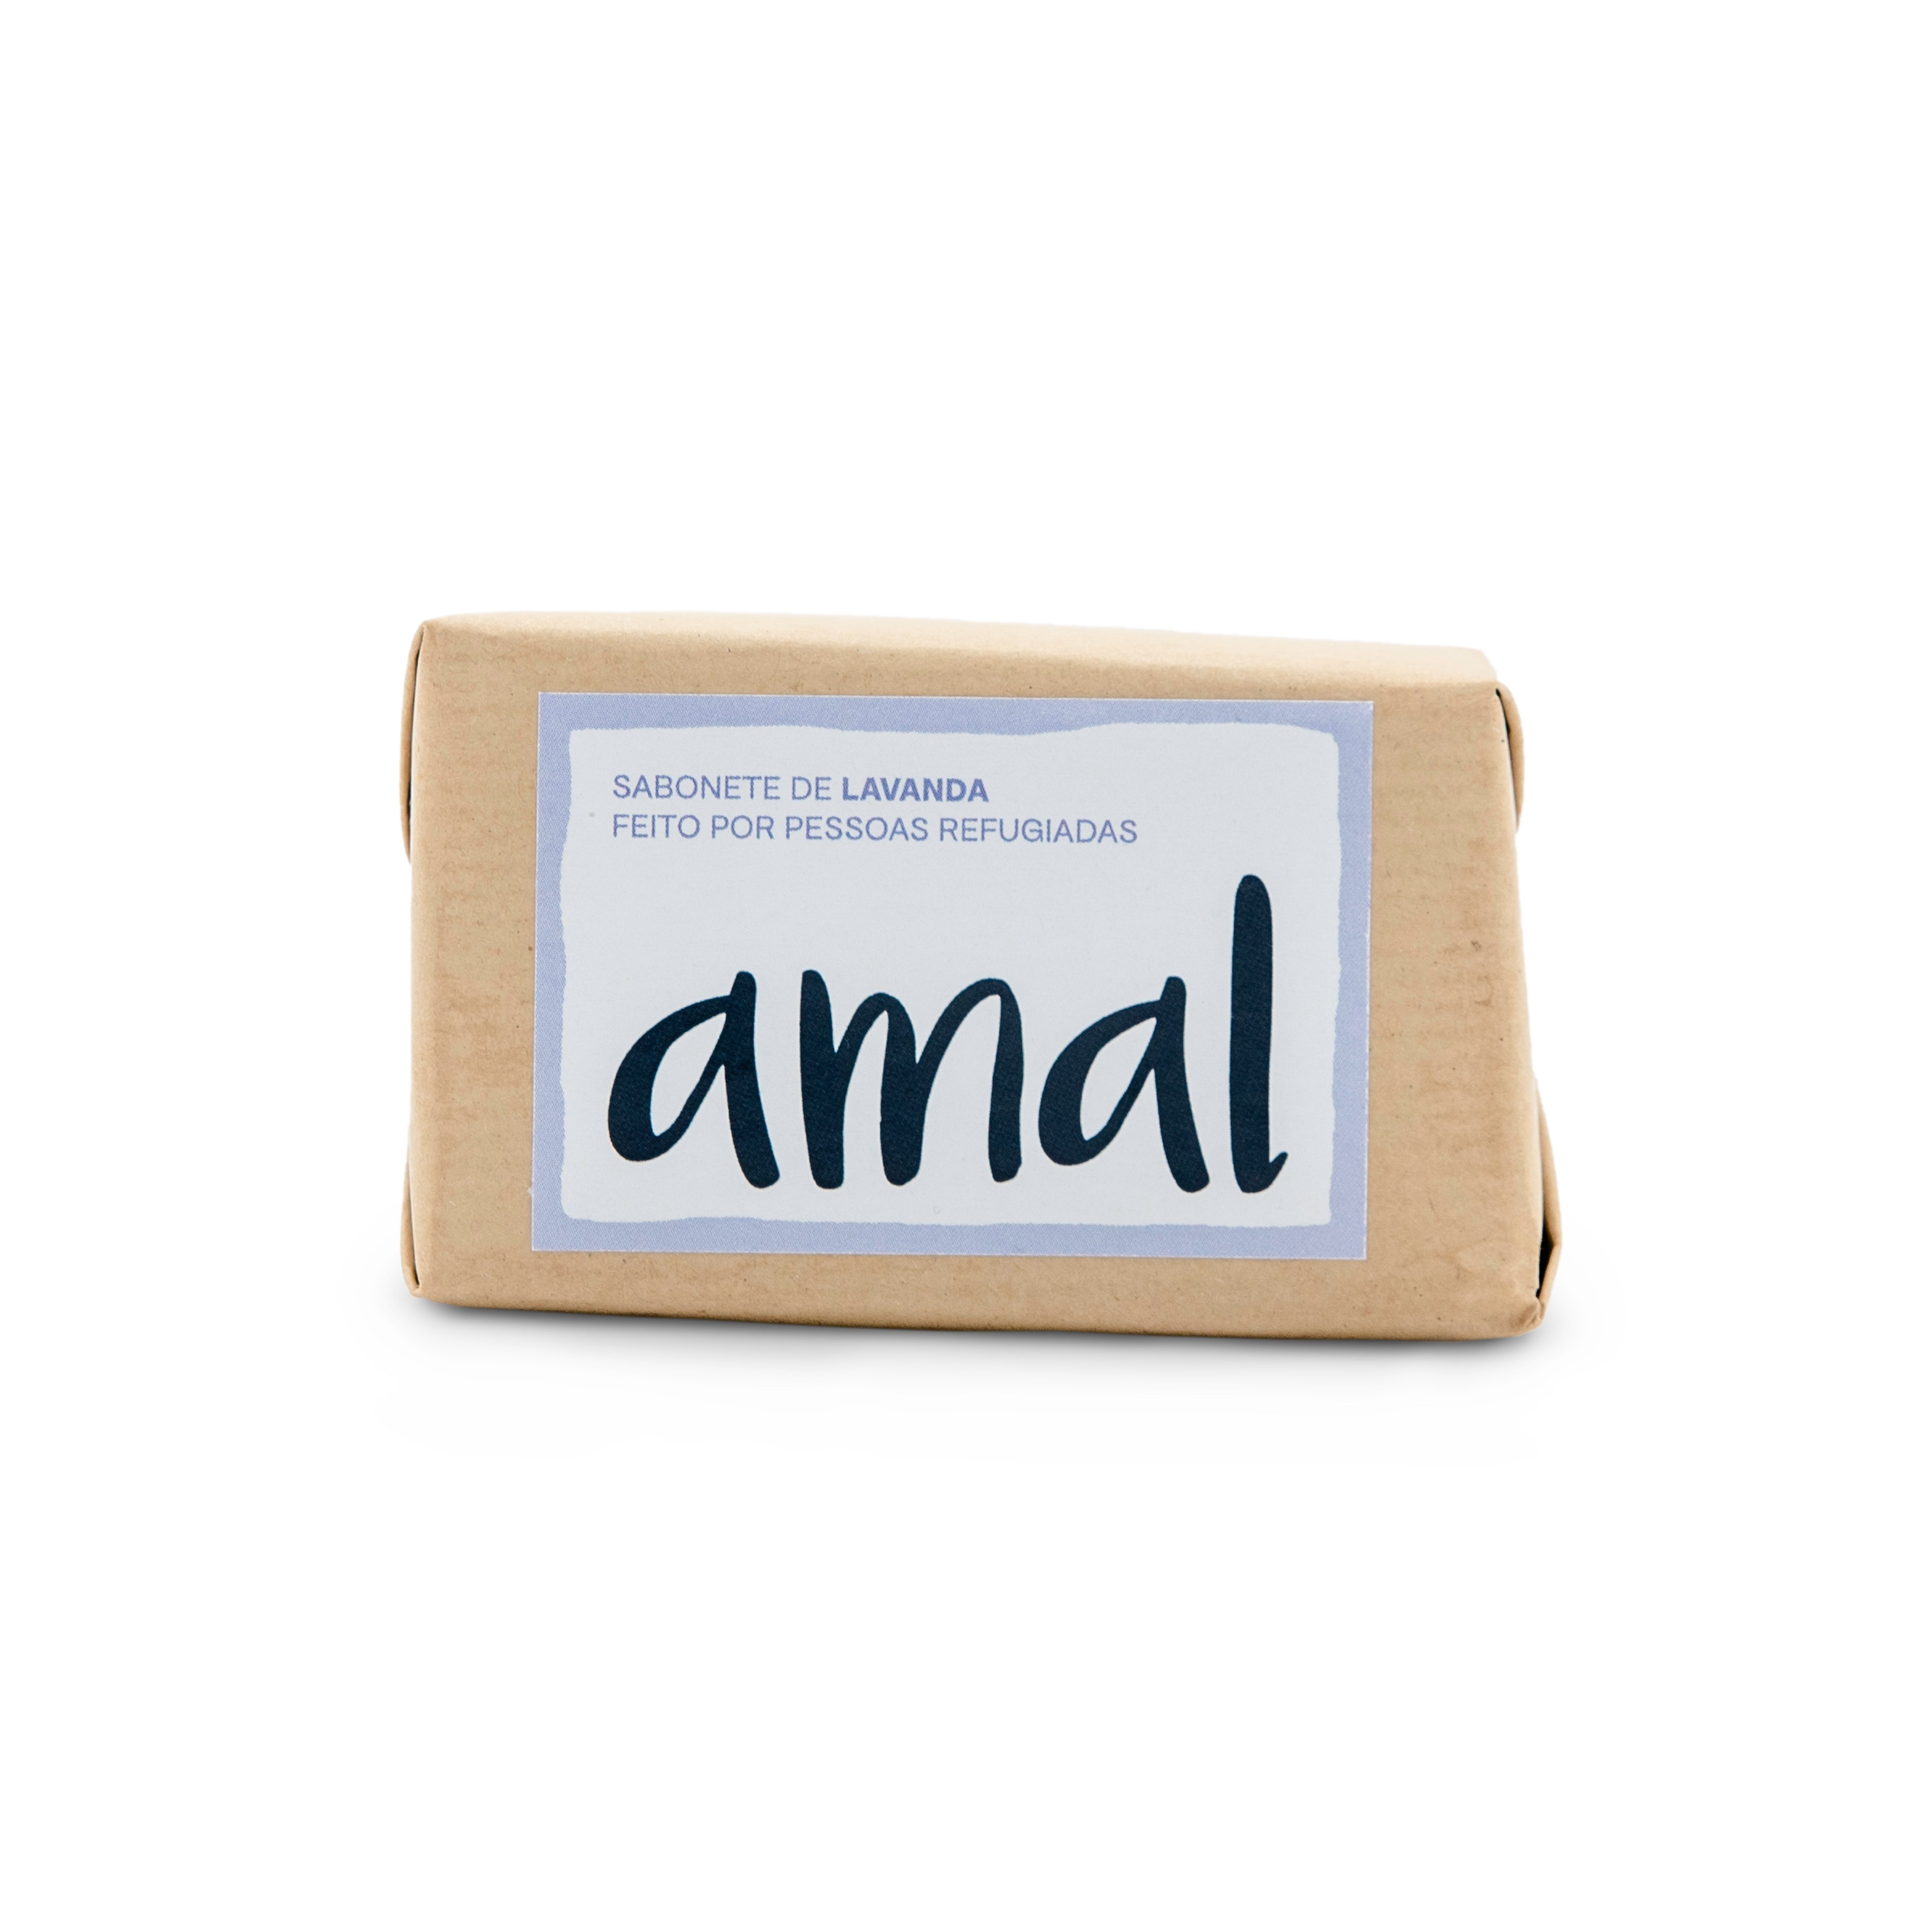 Sabonete de Lavanda da AMAL SOAP feito por pessoas refugiadas